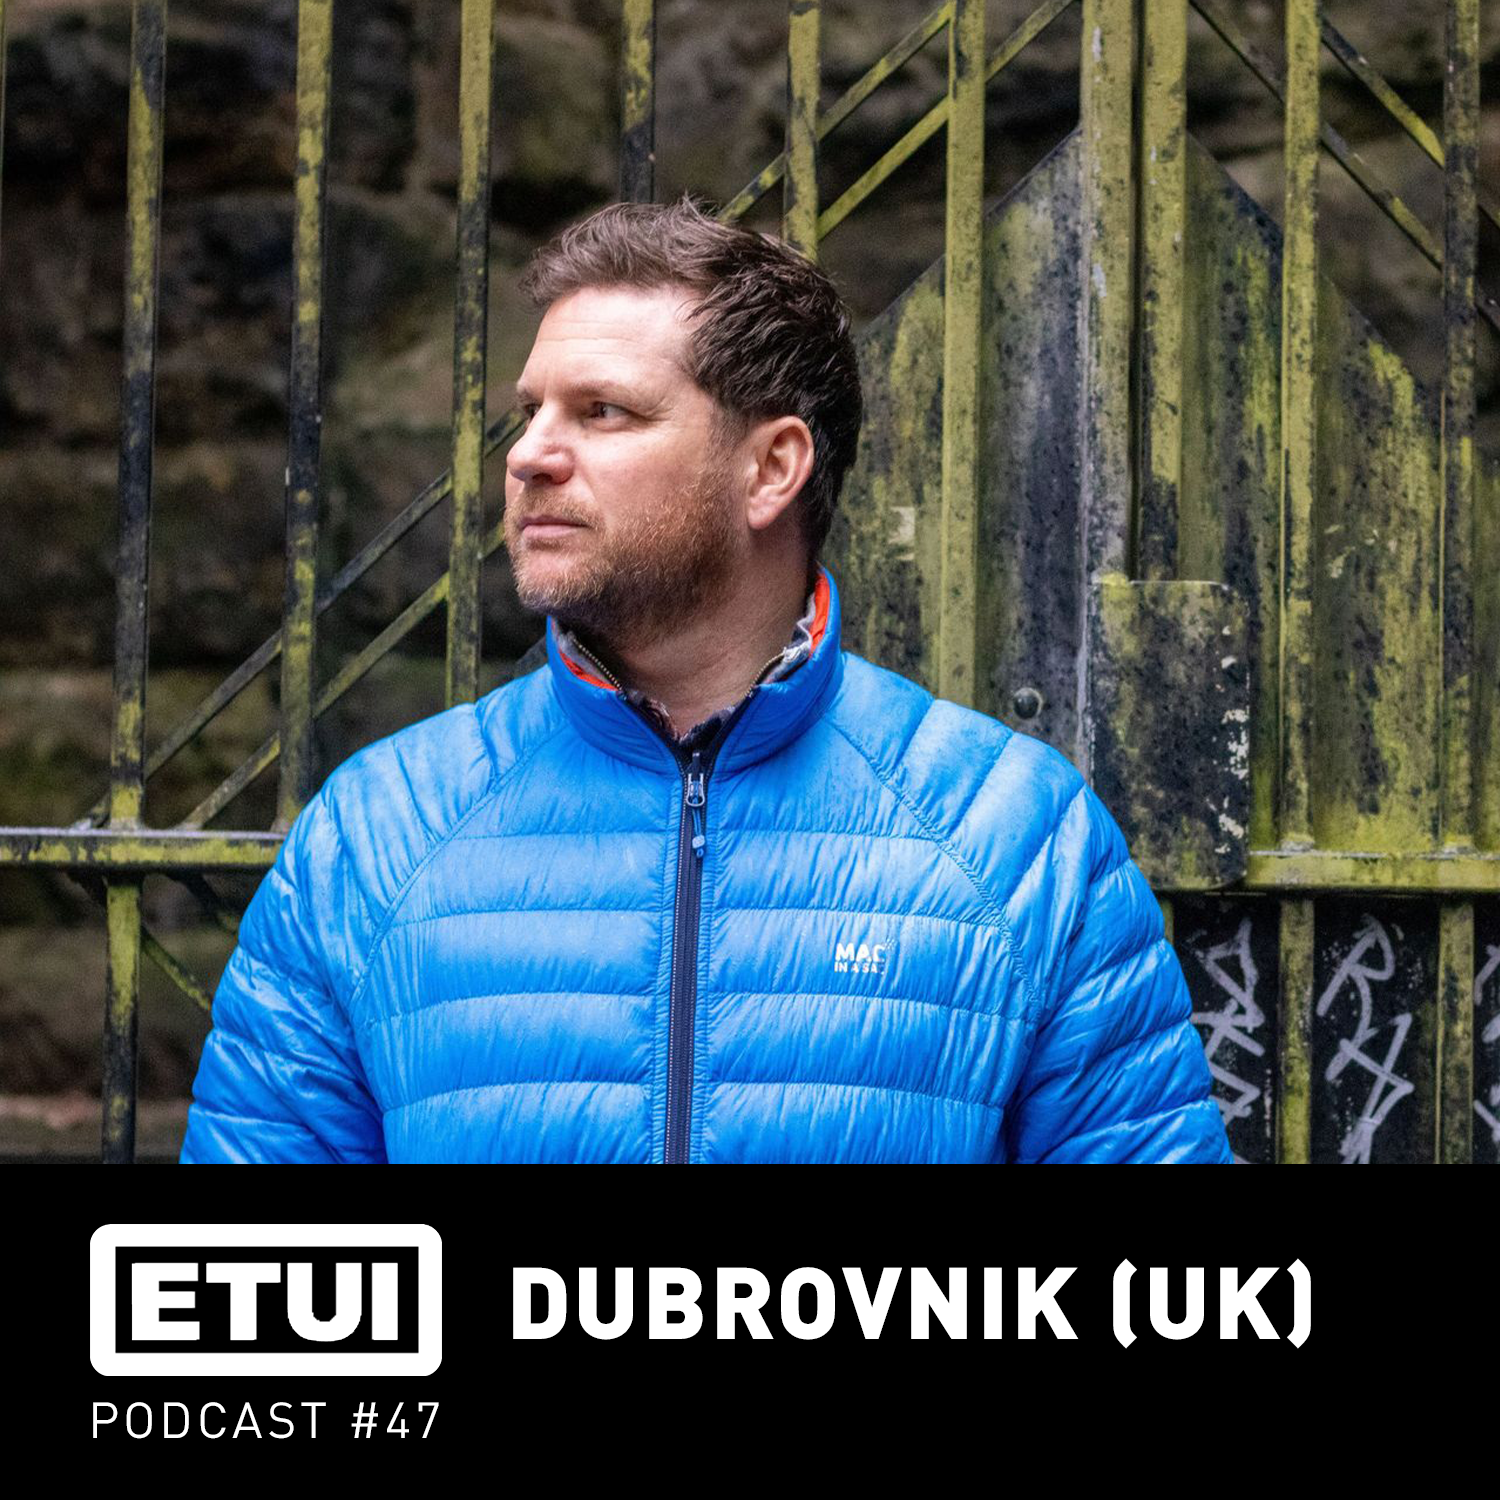 Etui Podcast #47: Dubrovnik (UK)